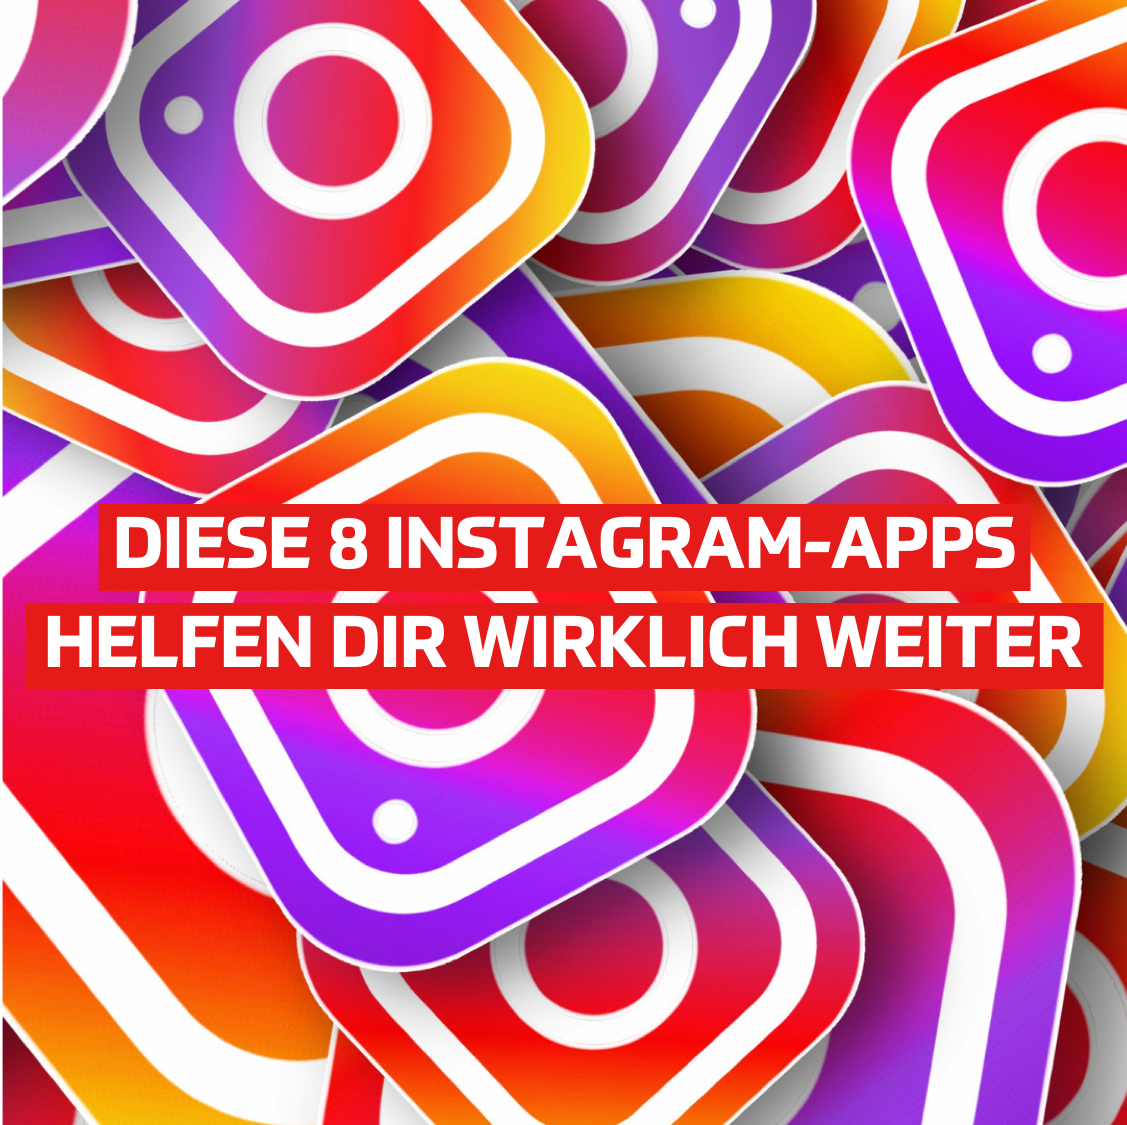 Instagram-apps